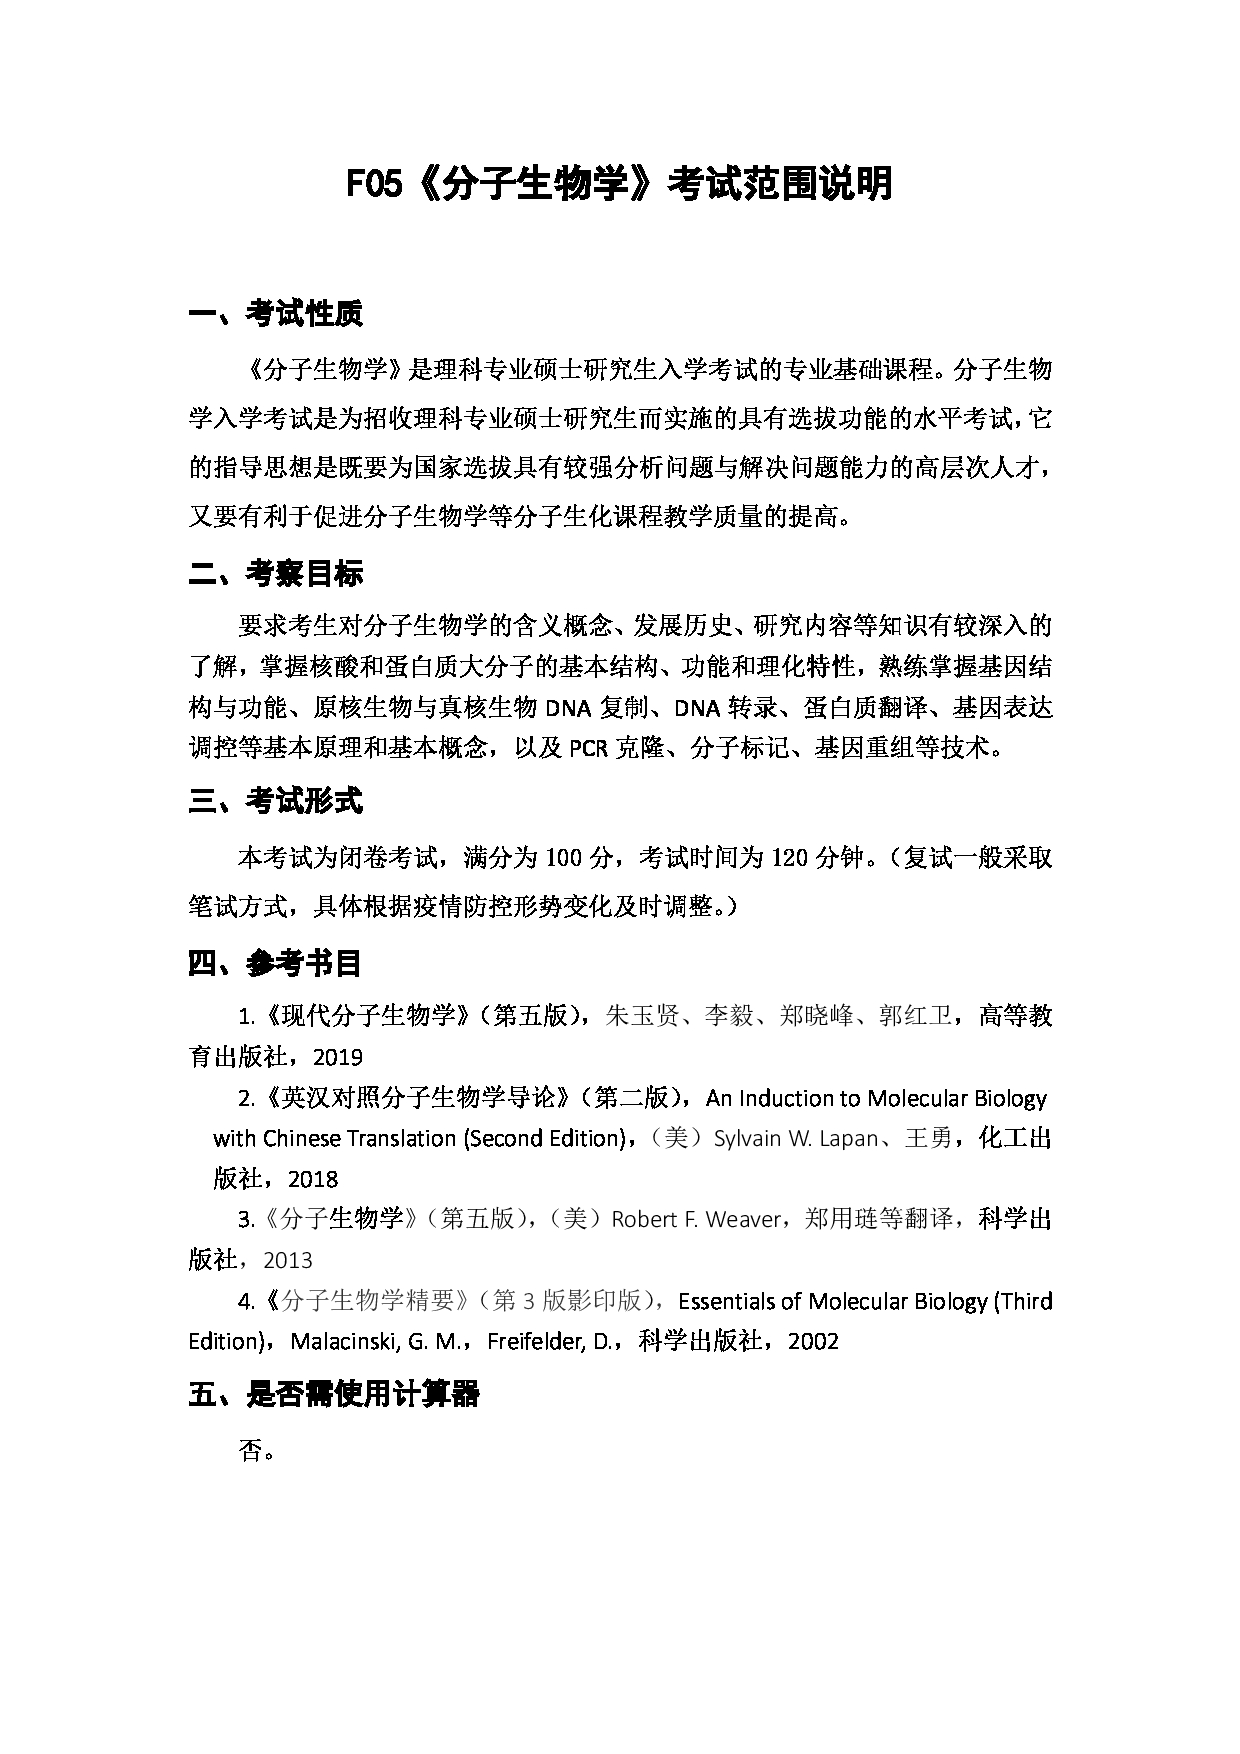 上海海洋大学2023年考研自命题科目  F05《分子生物学》 考试范围第1页